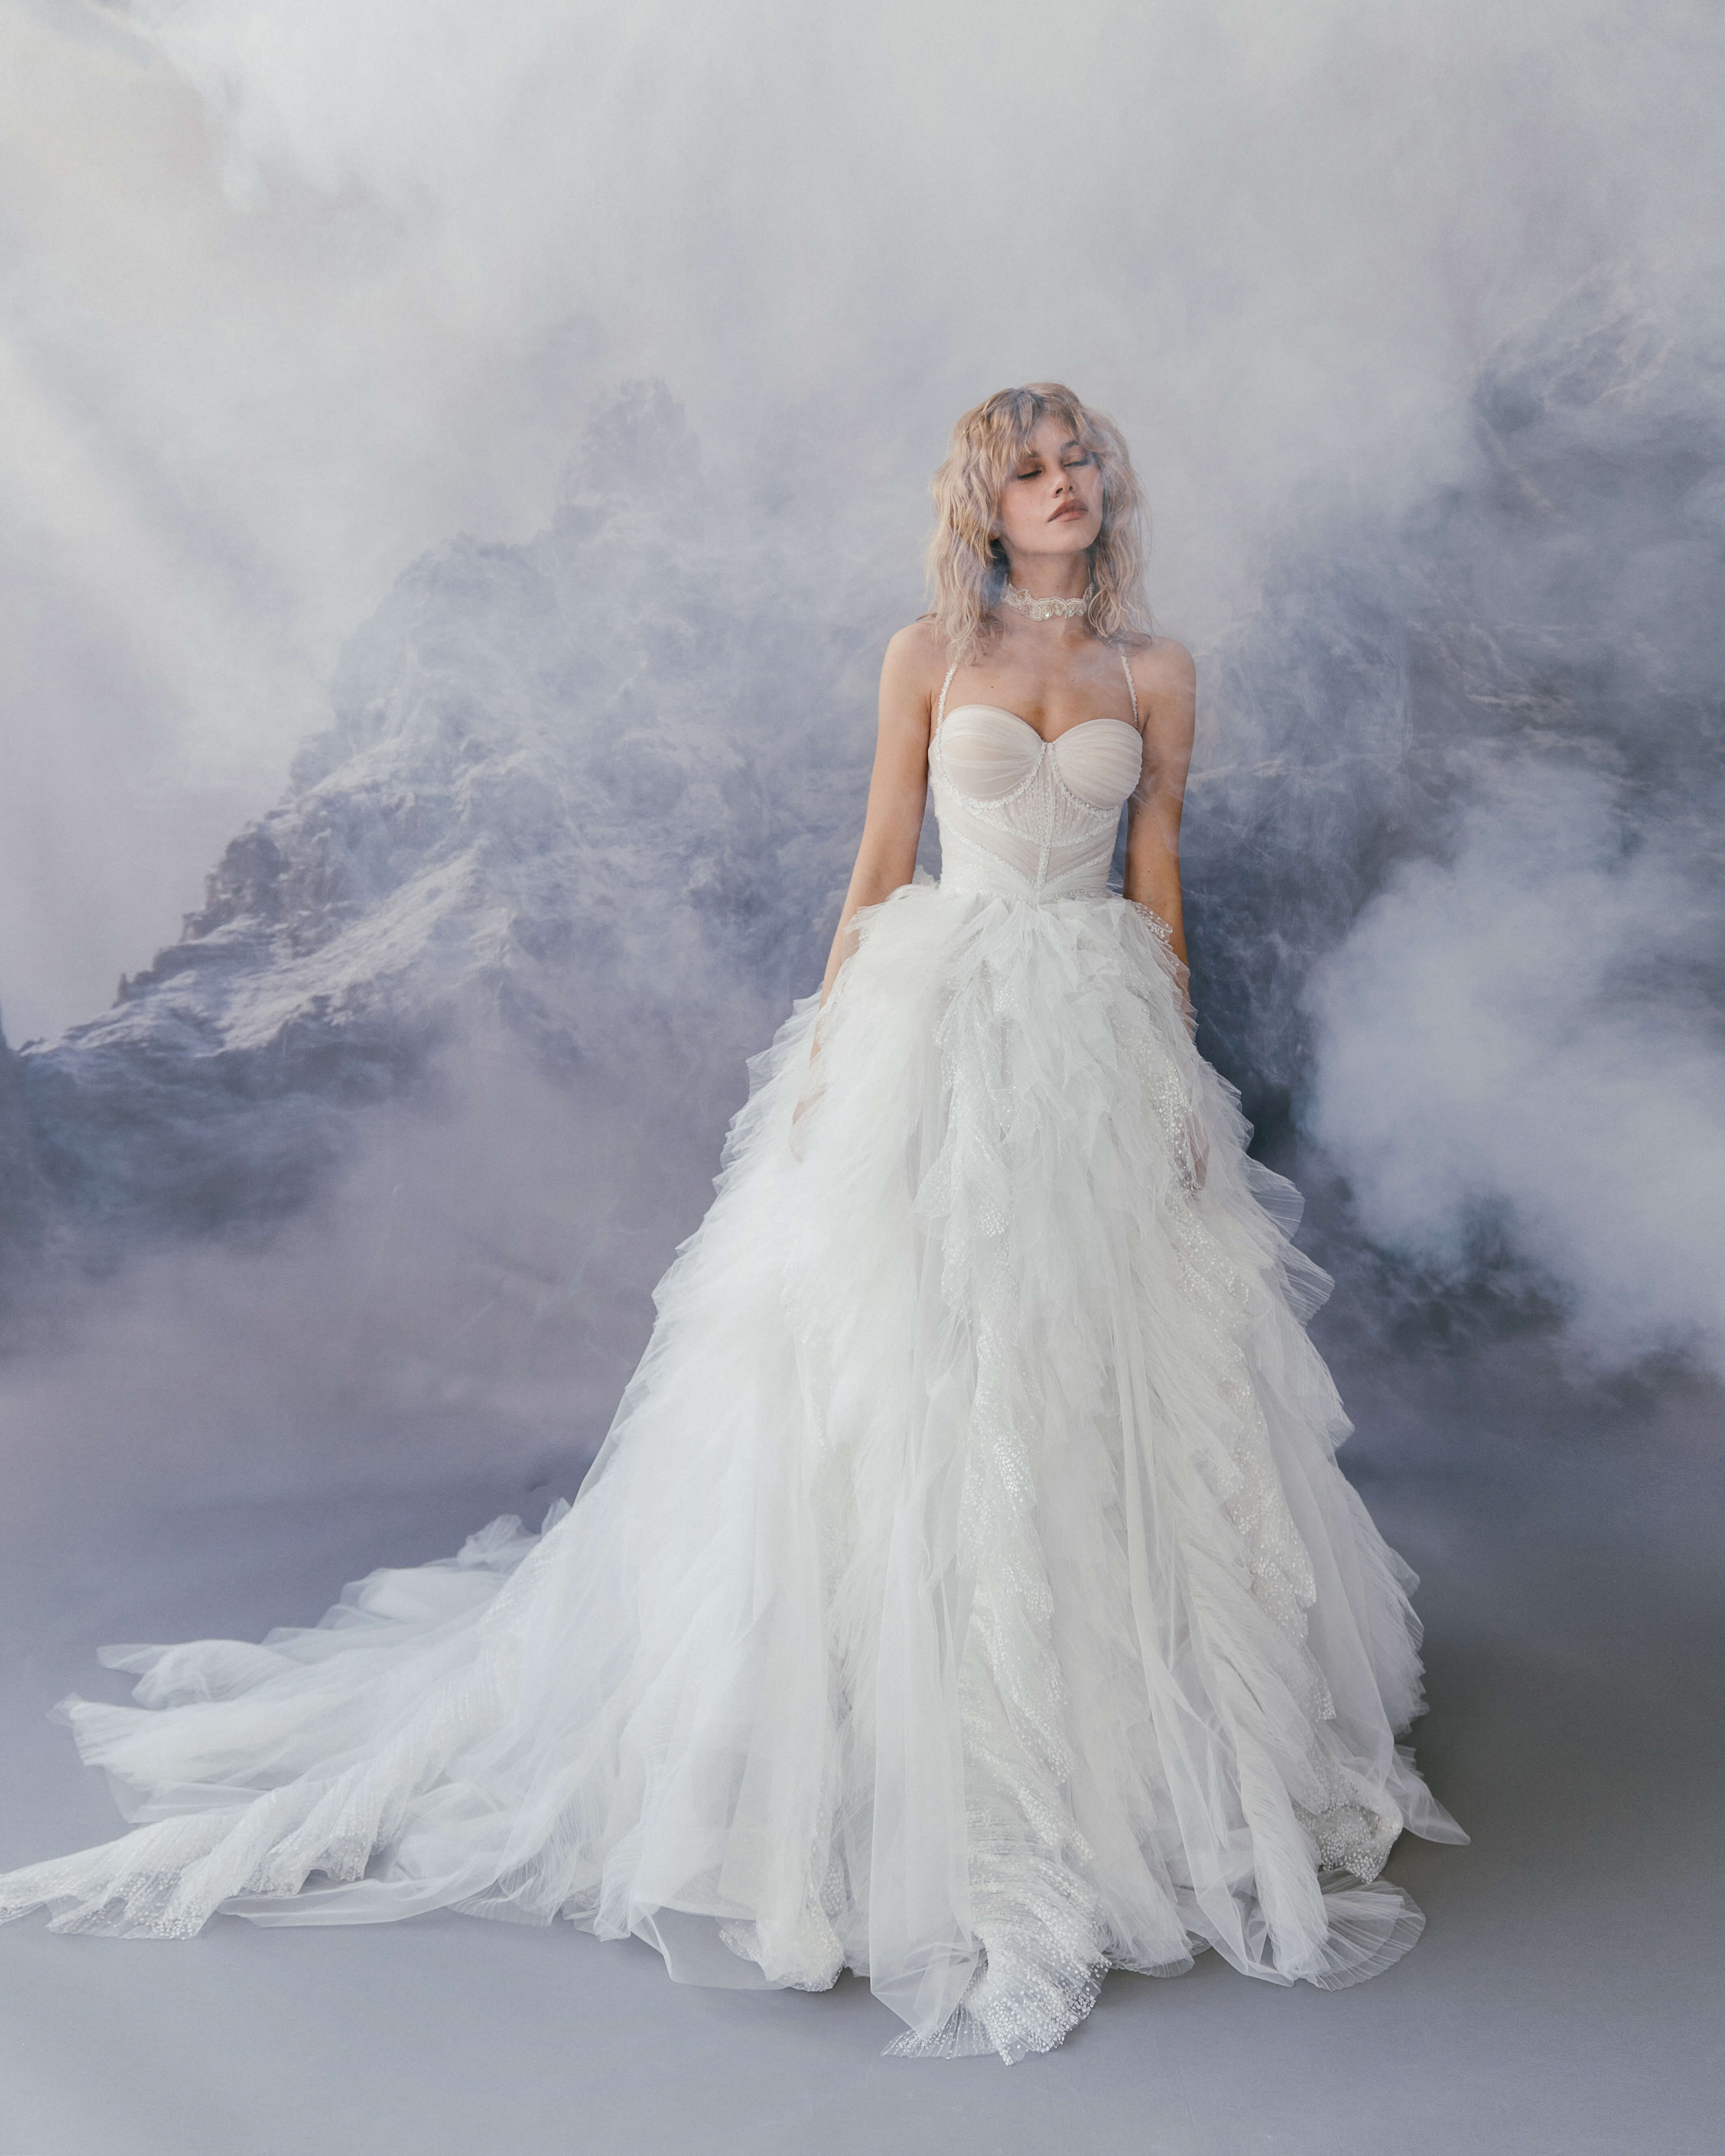 Купить свадебное платье «Паскаль» Бламмо Биамо из коллекции Сказка 2022 года в салоне «Мэри Трюфель»